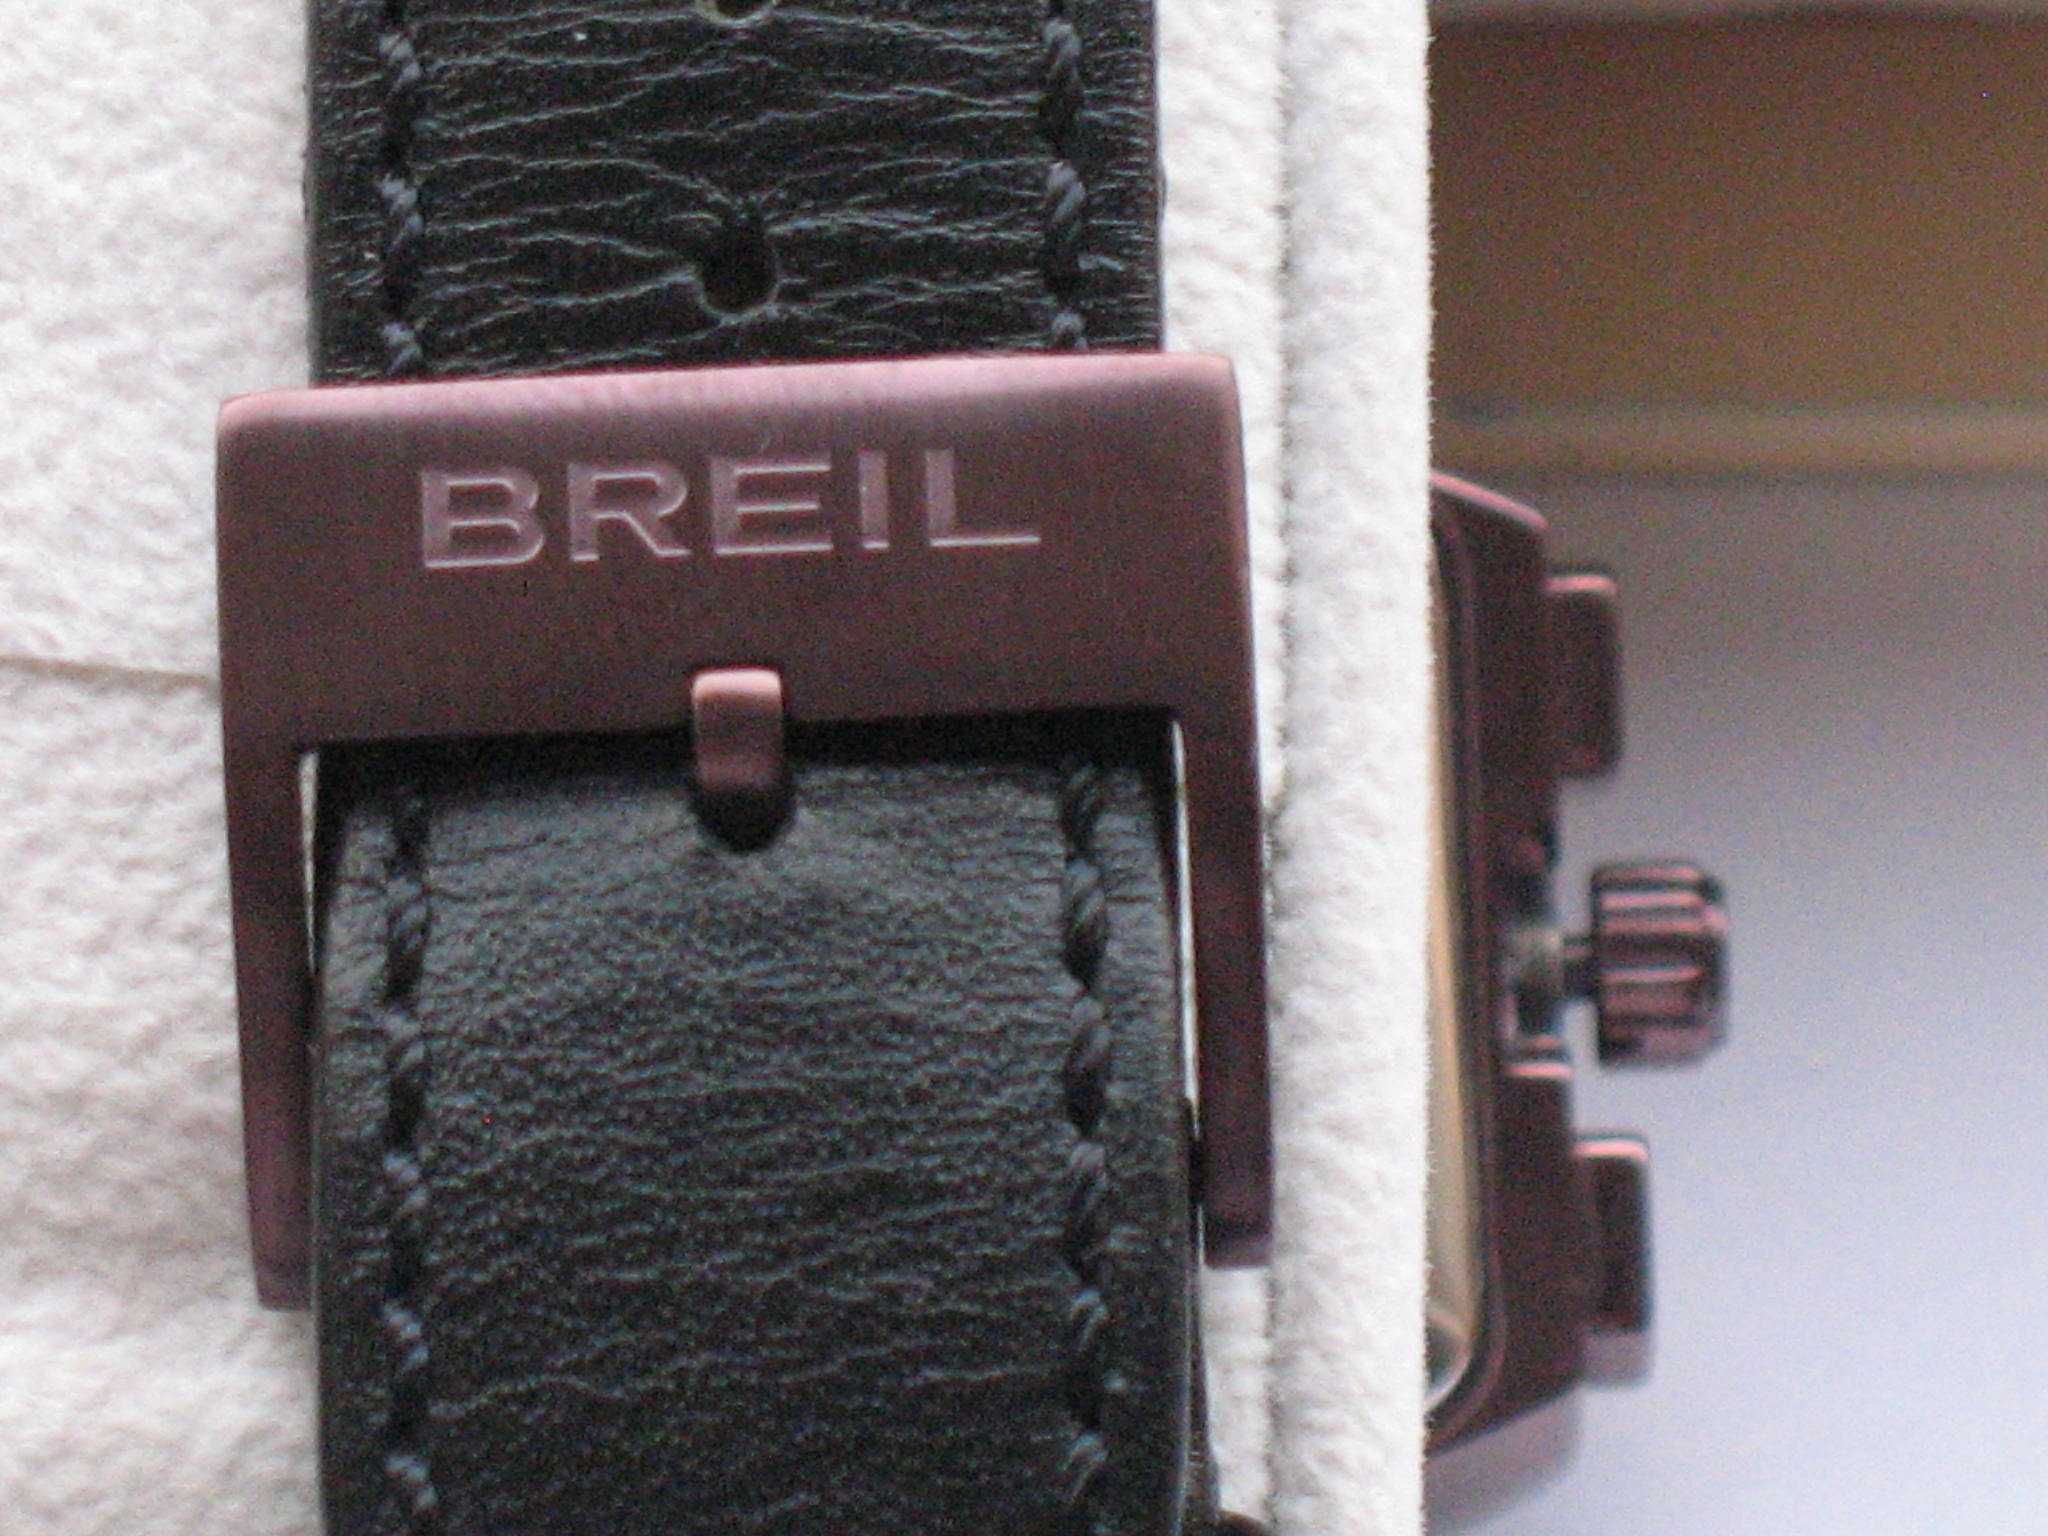 Vendo relógio original da marca BREIL como novo